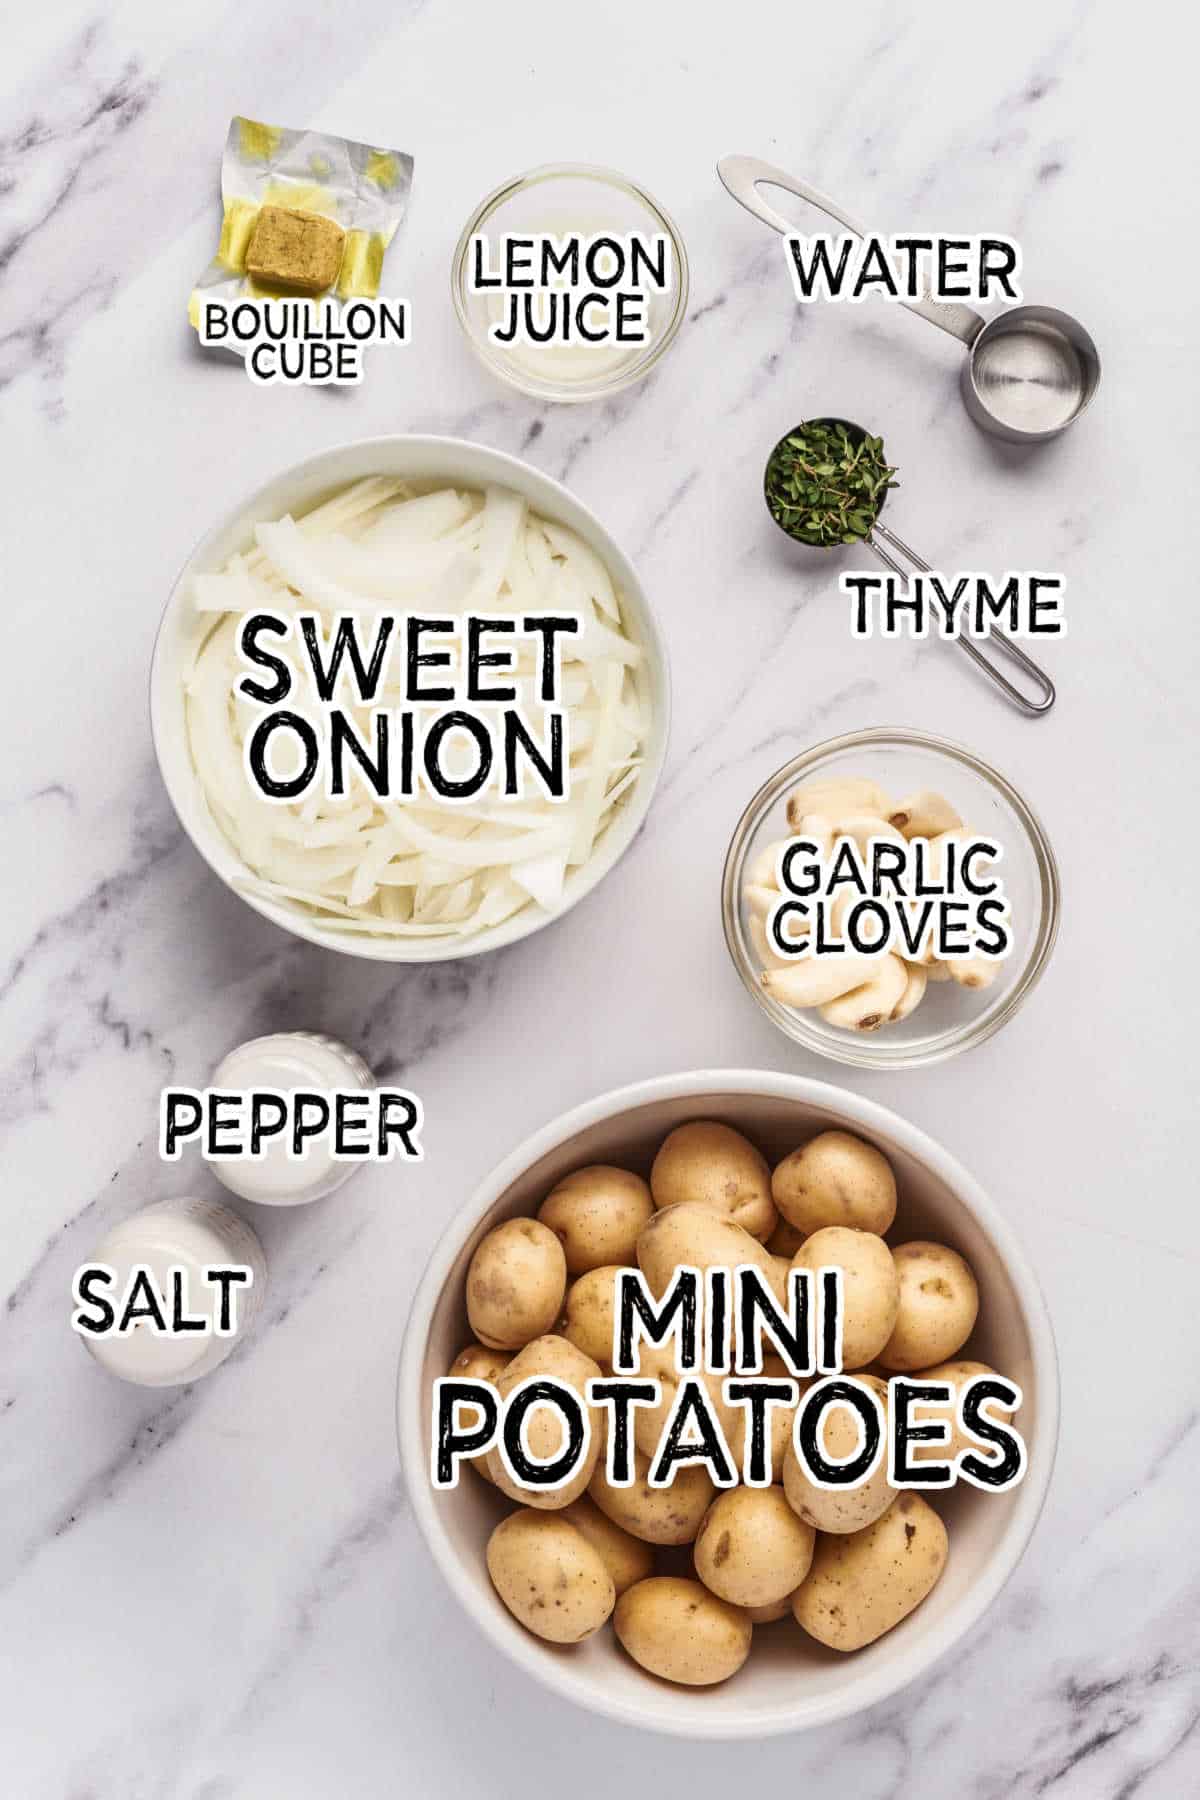 Ingredients to make slow cooker garlic potatoes.